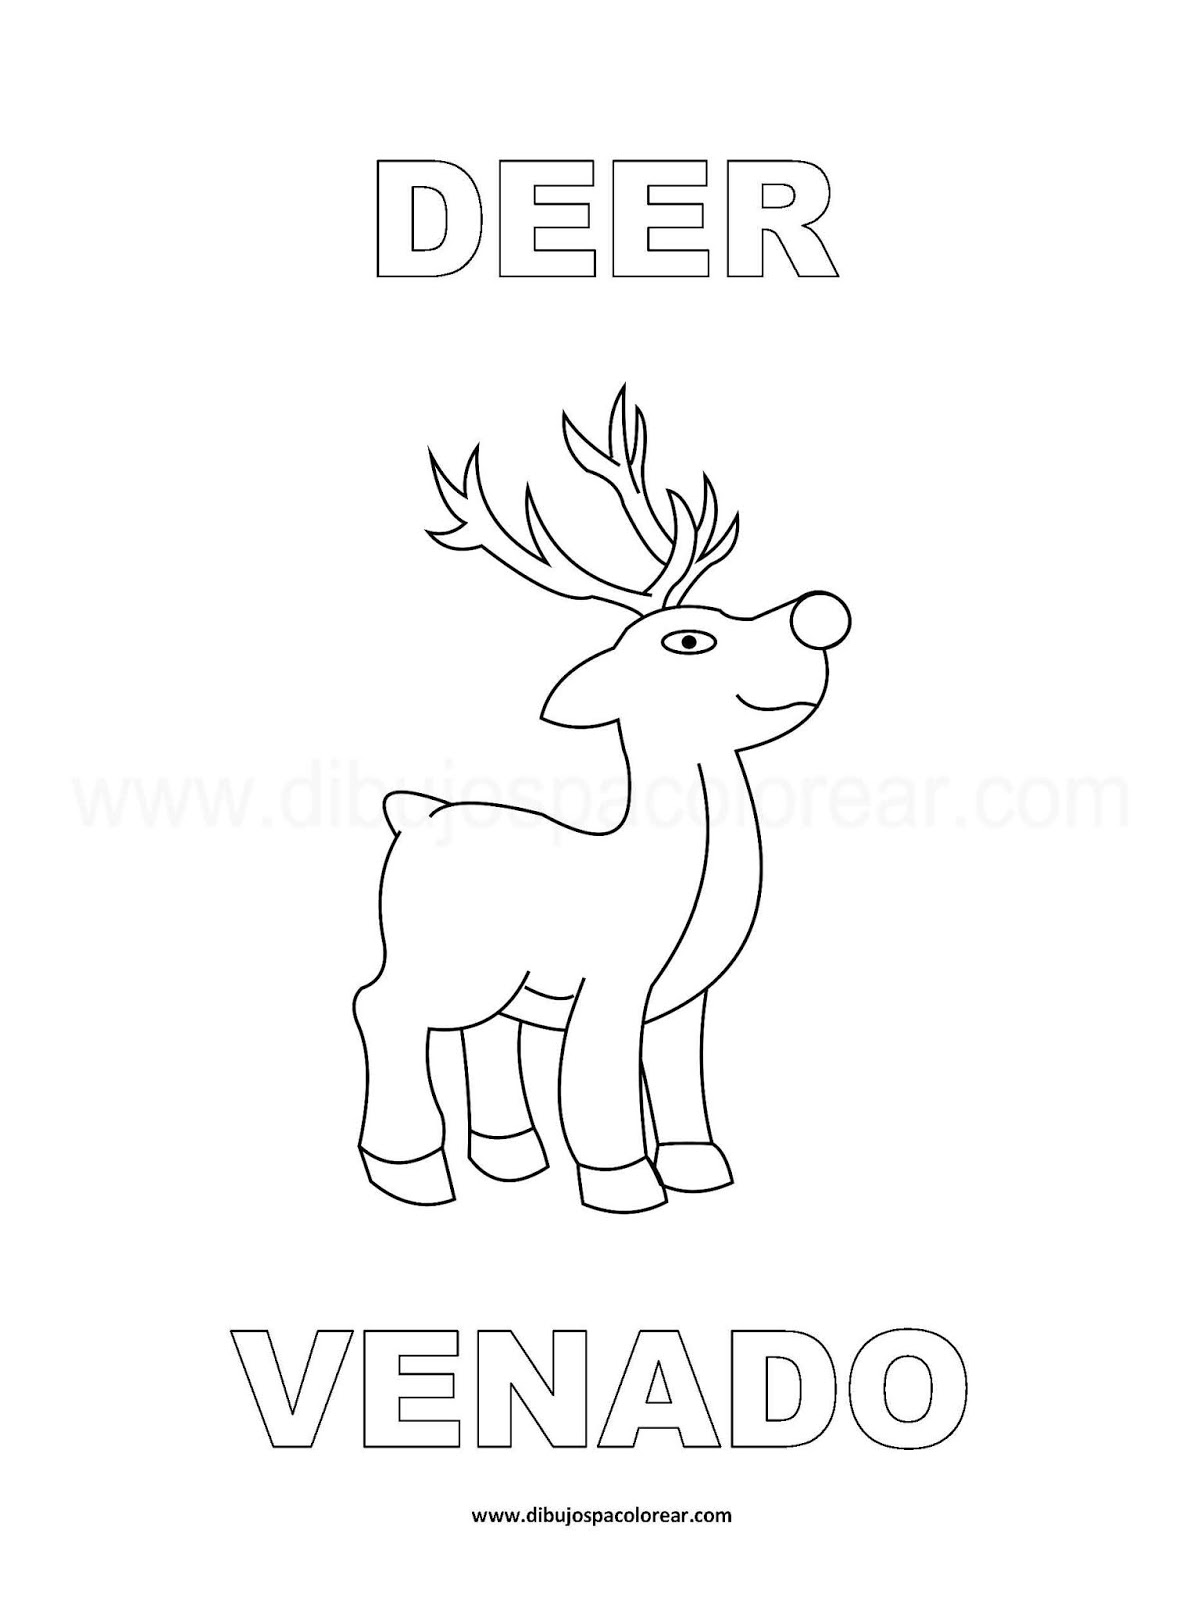 Dibujos Inglés - Español con V: Venado - Deer